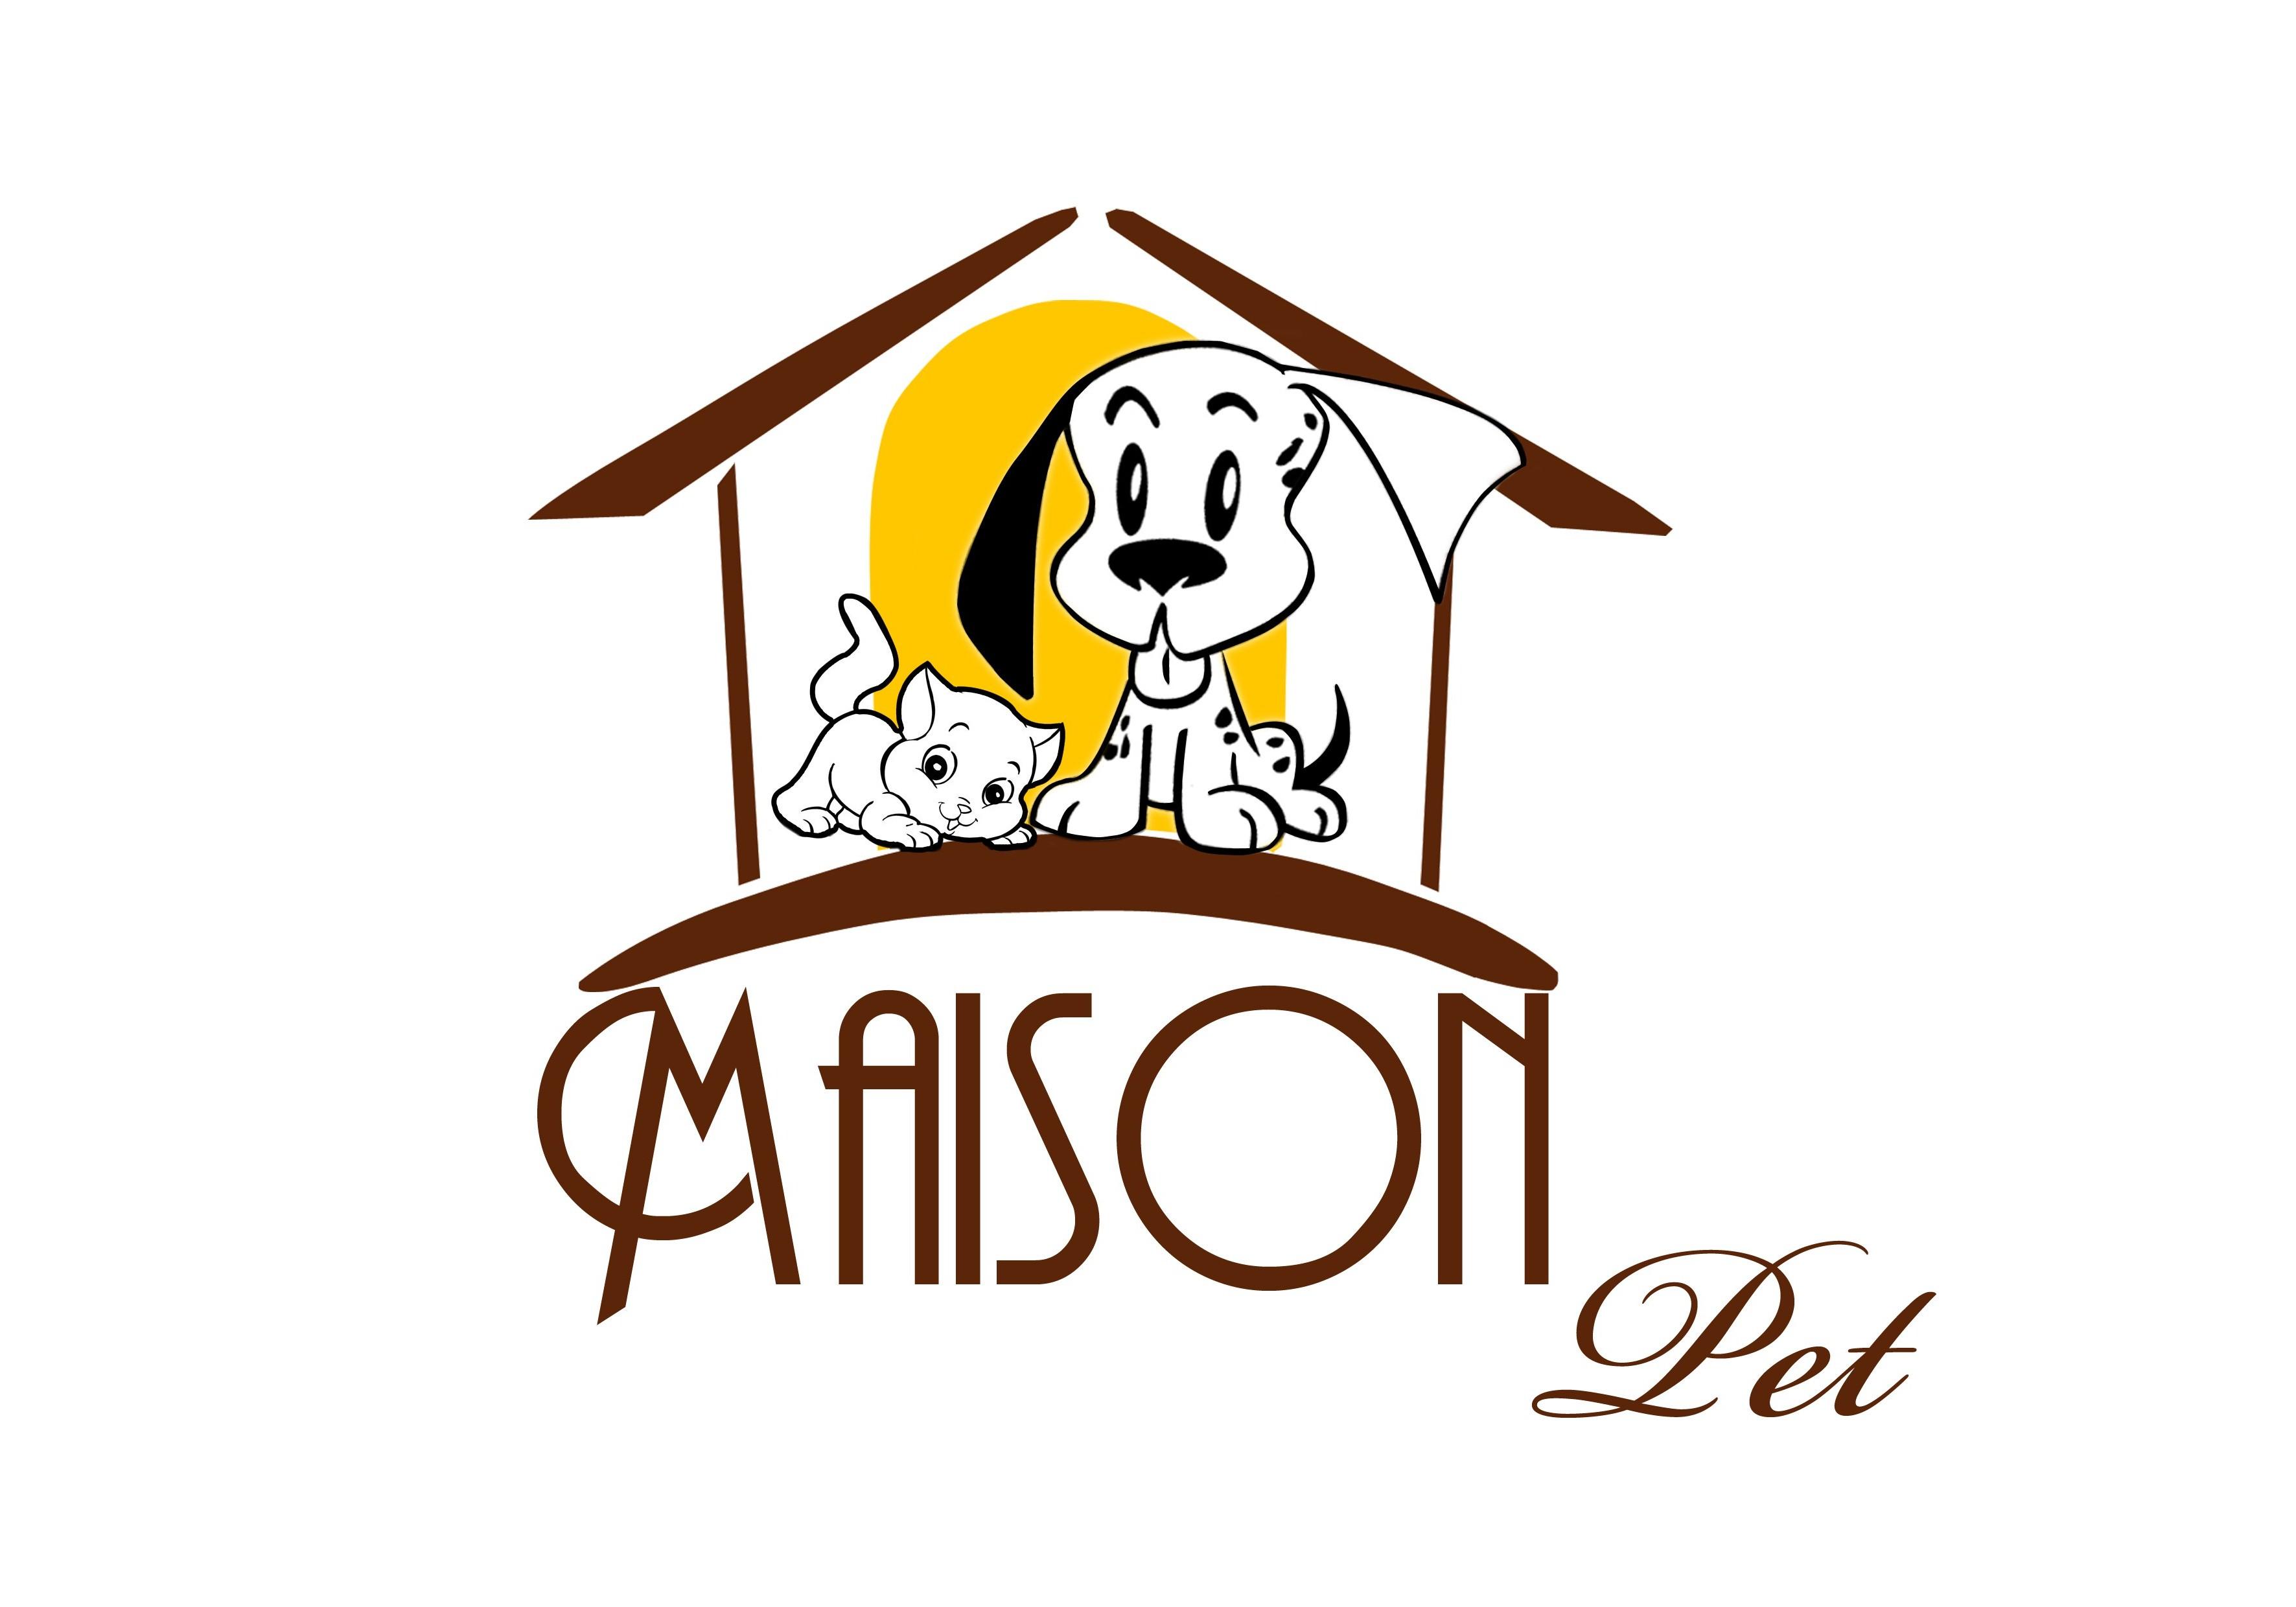 MAISON PET